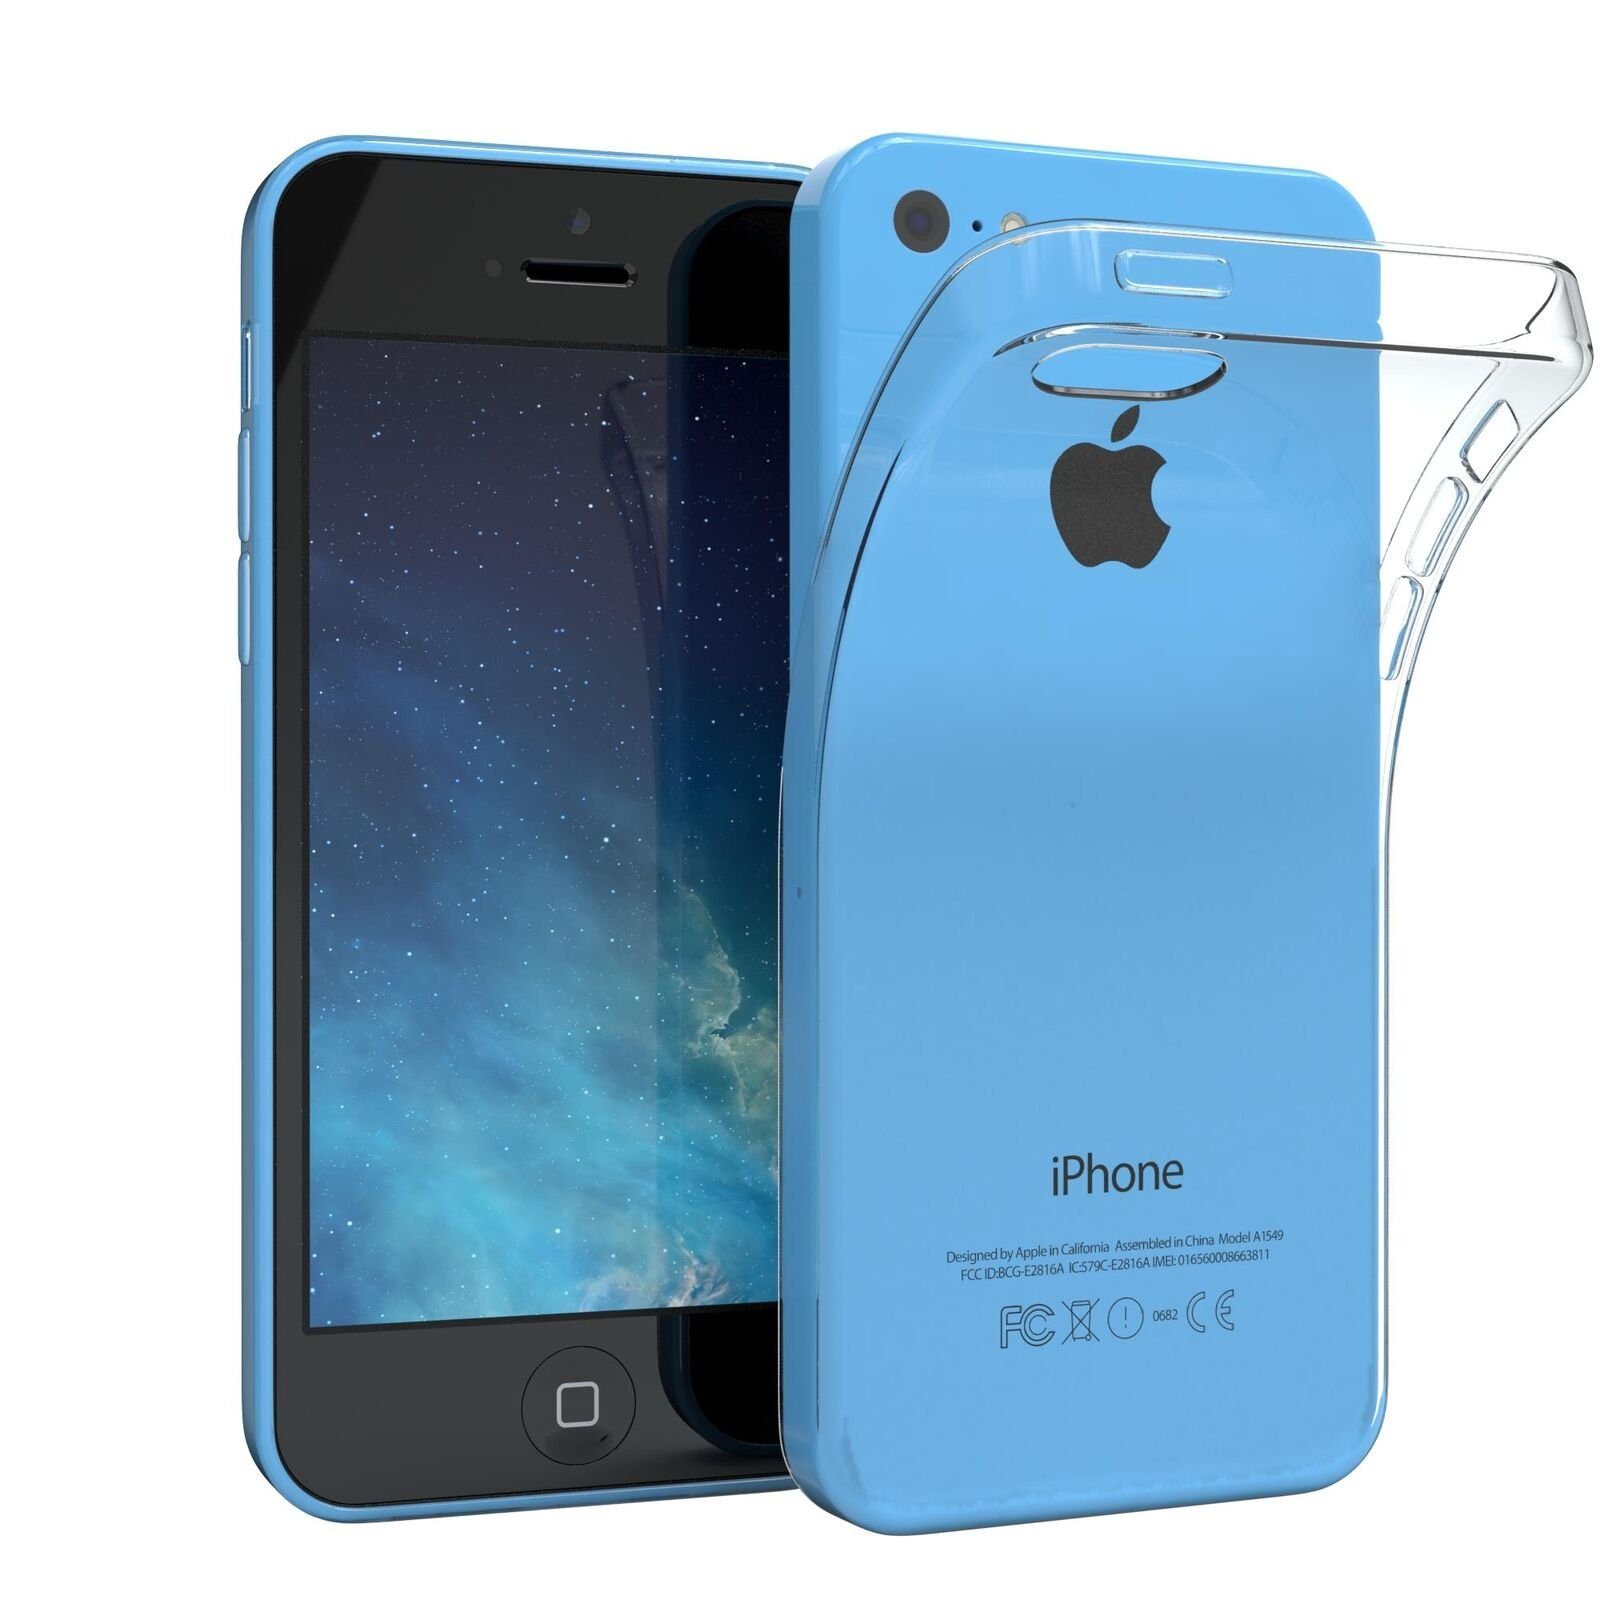 Handyhülle iPhone 5 Schutz 12,7 cm (5 Zoll), Apple Hülle transparent